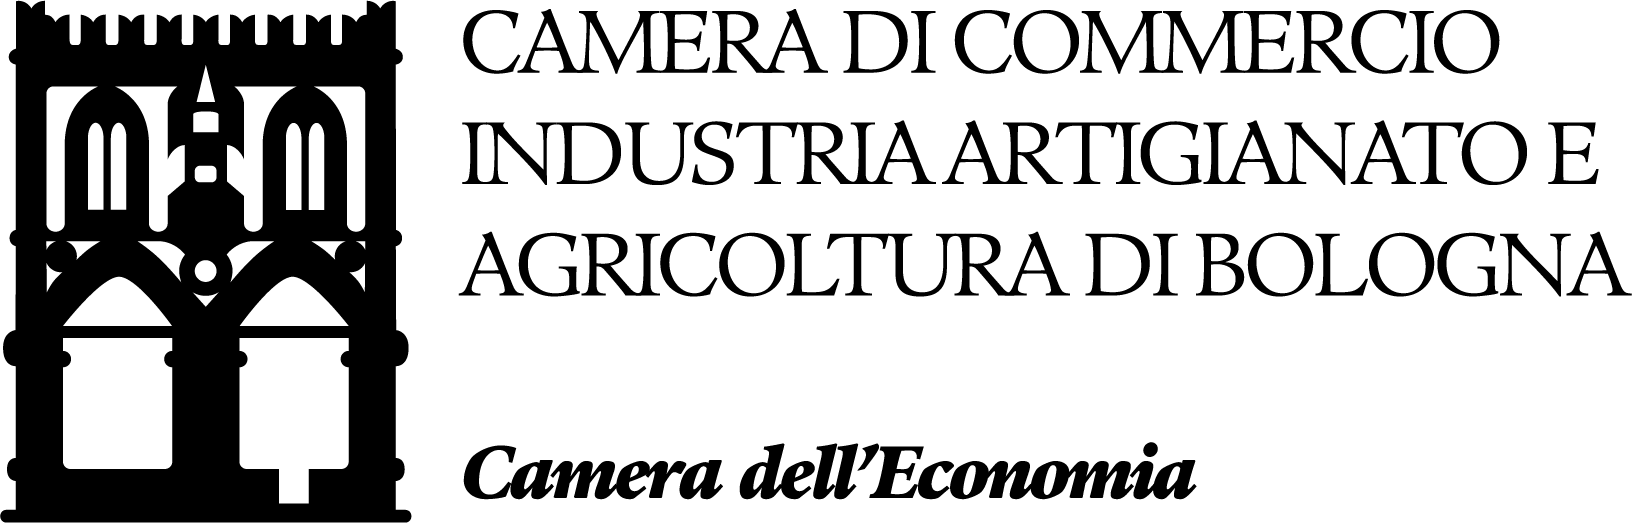 Logo Camera di Commercio Industria Artigianto e Agricoltura di Bologna